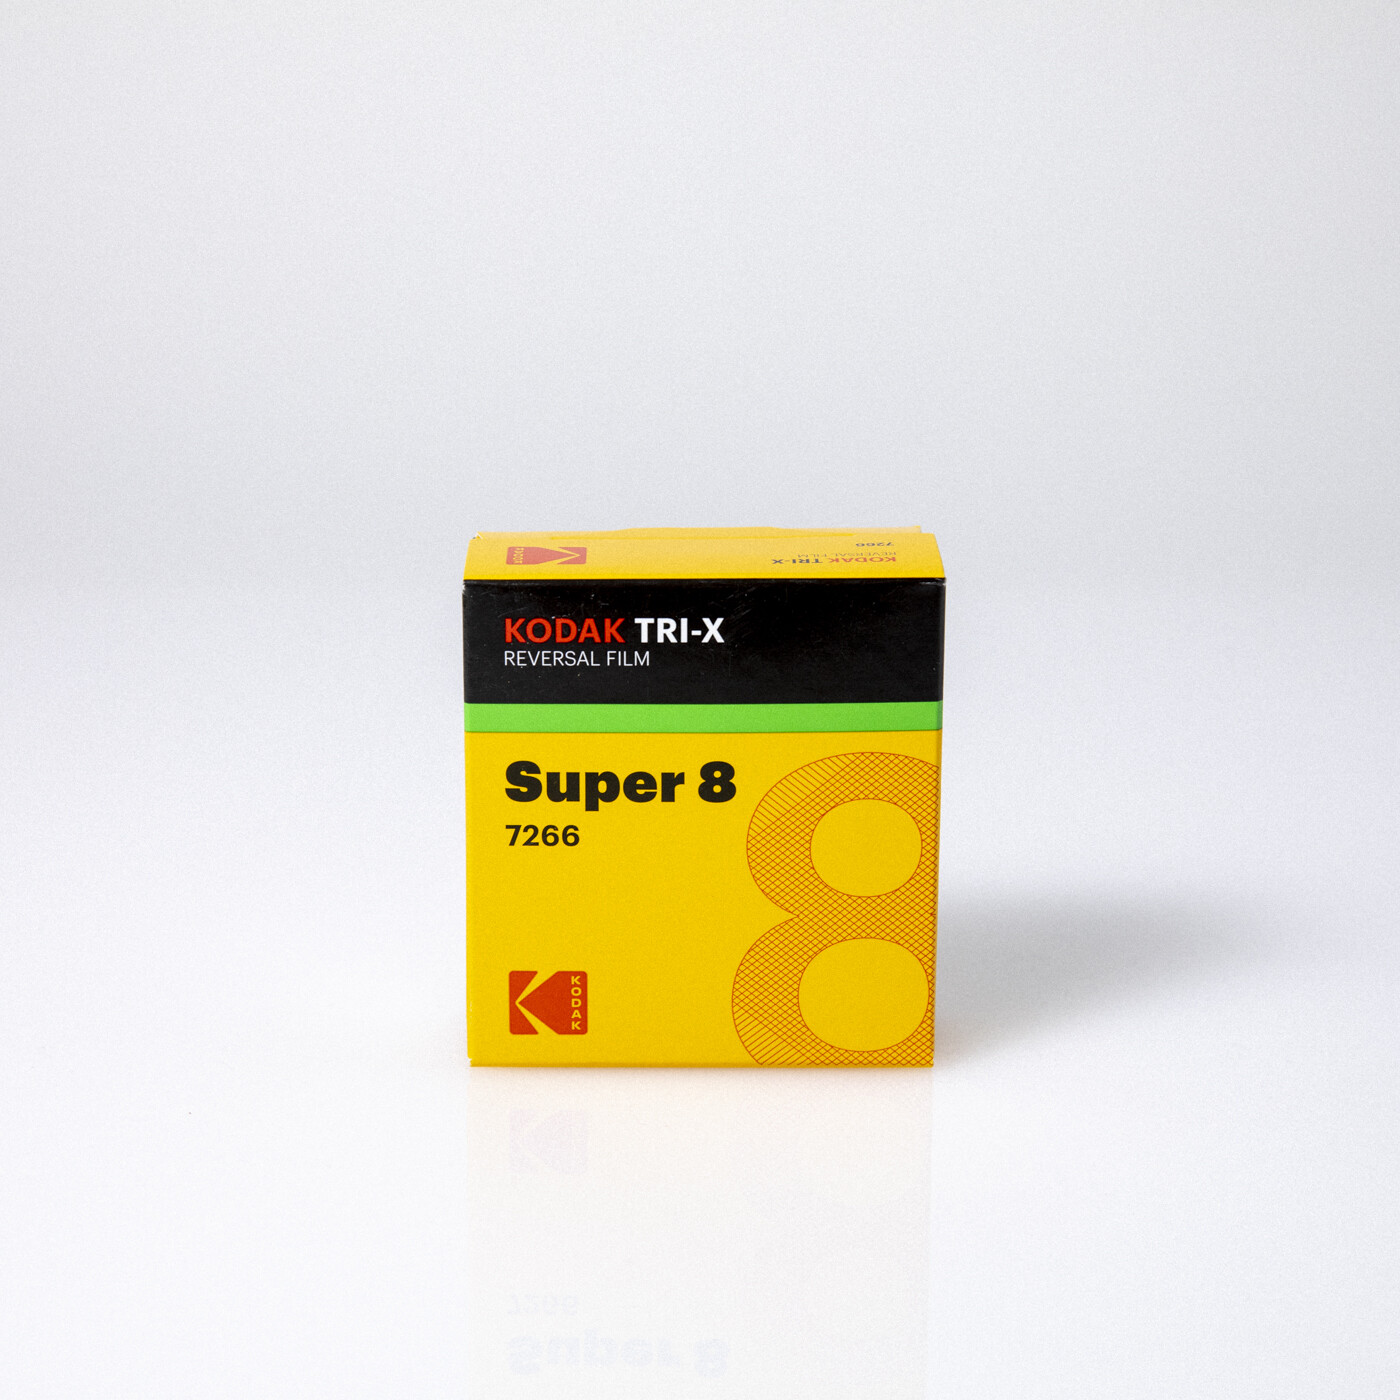 Super 8 – KODAK TRI-X Reversal Film 7266 [B&W]